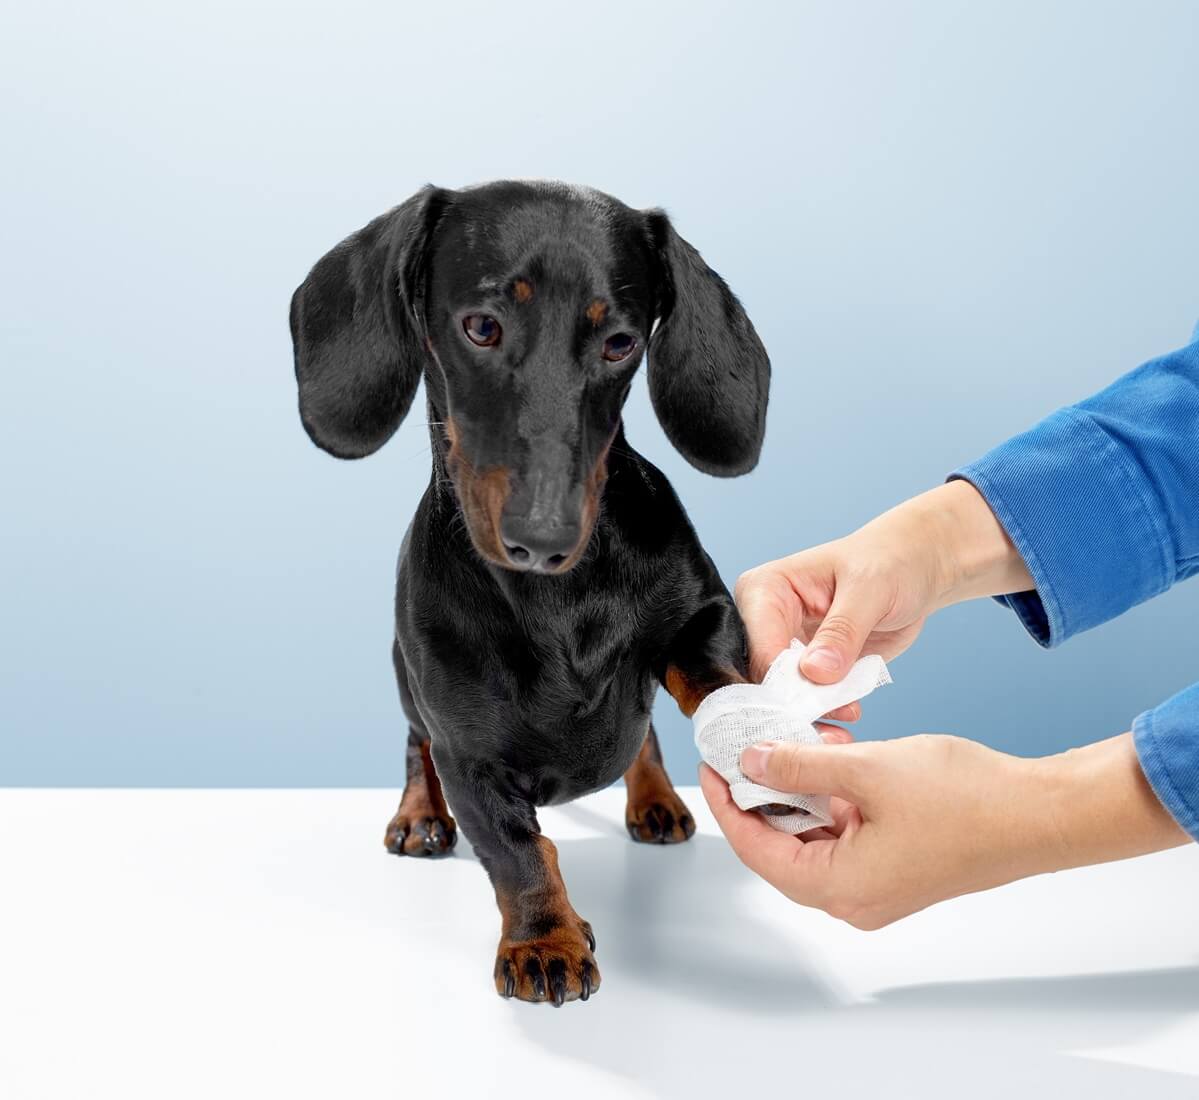 vet bandaging dogs leg